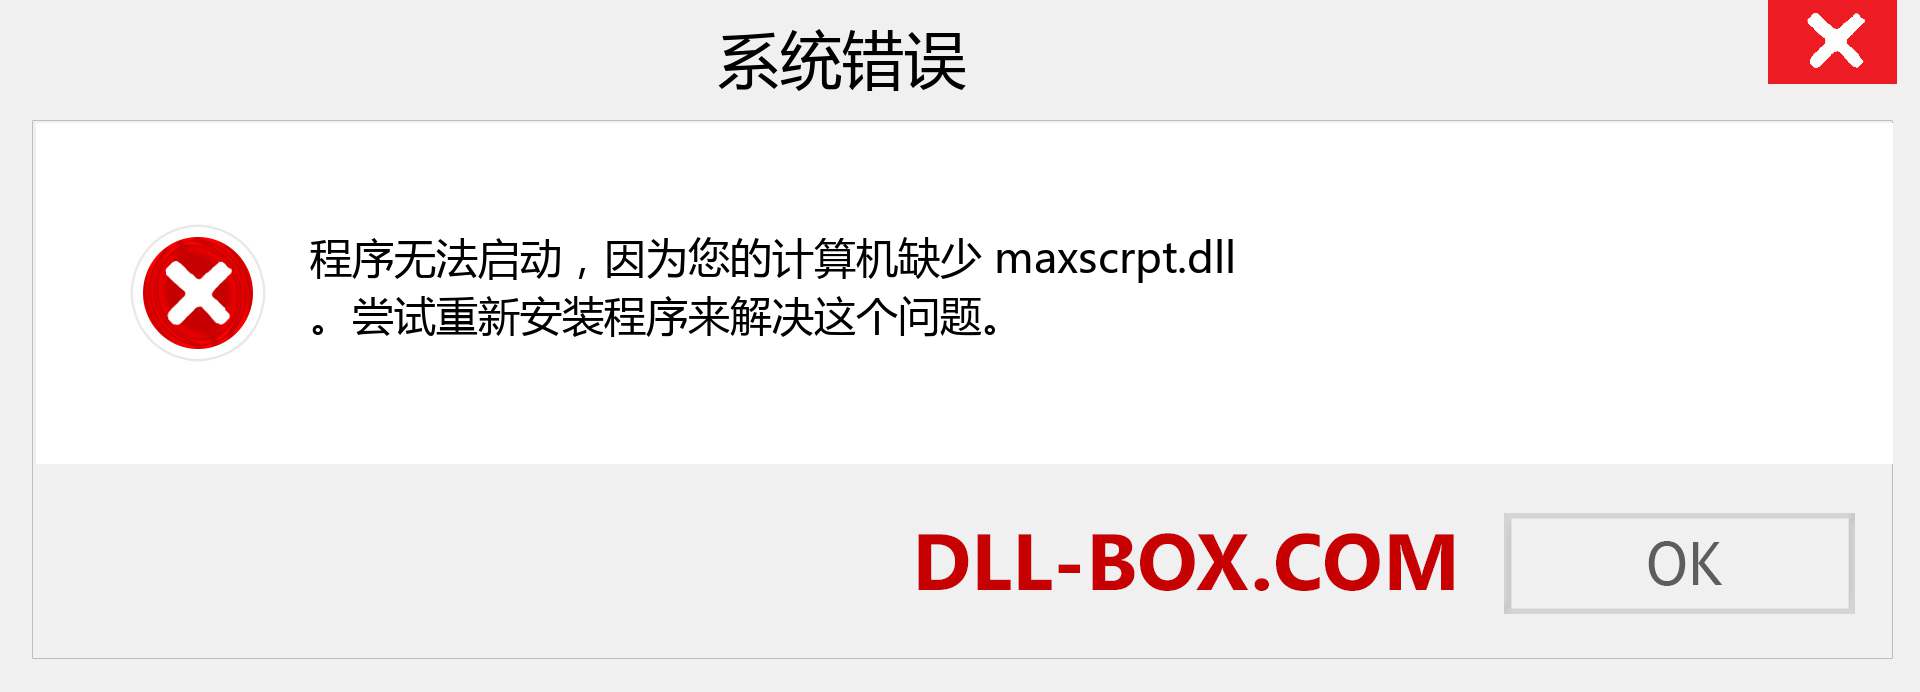 maxscrpt.dll 文件丢失？。 适用于 Windows 7、8、10 的下载 - 修复 Windows、照片、图像上的 maxscrpt dll 丢失错误